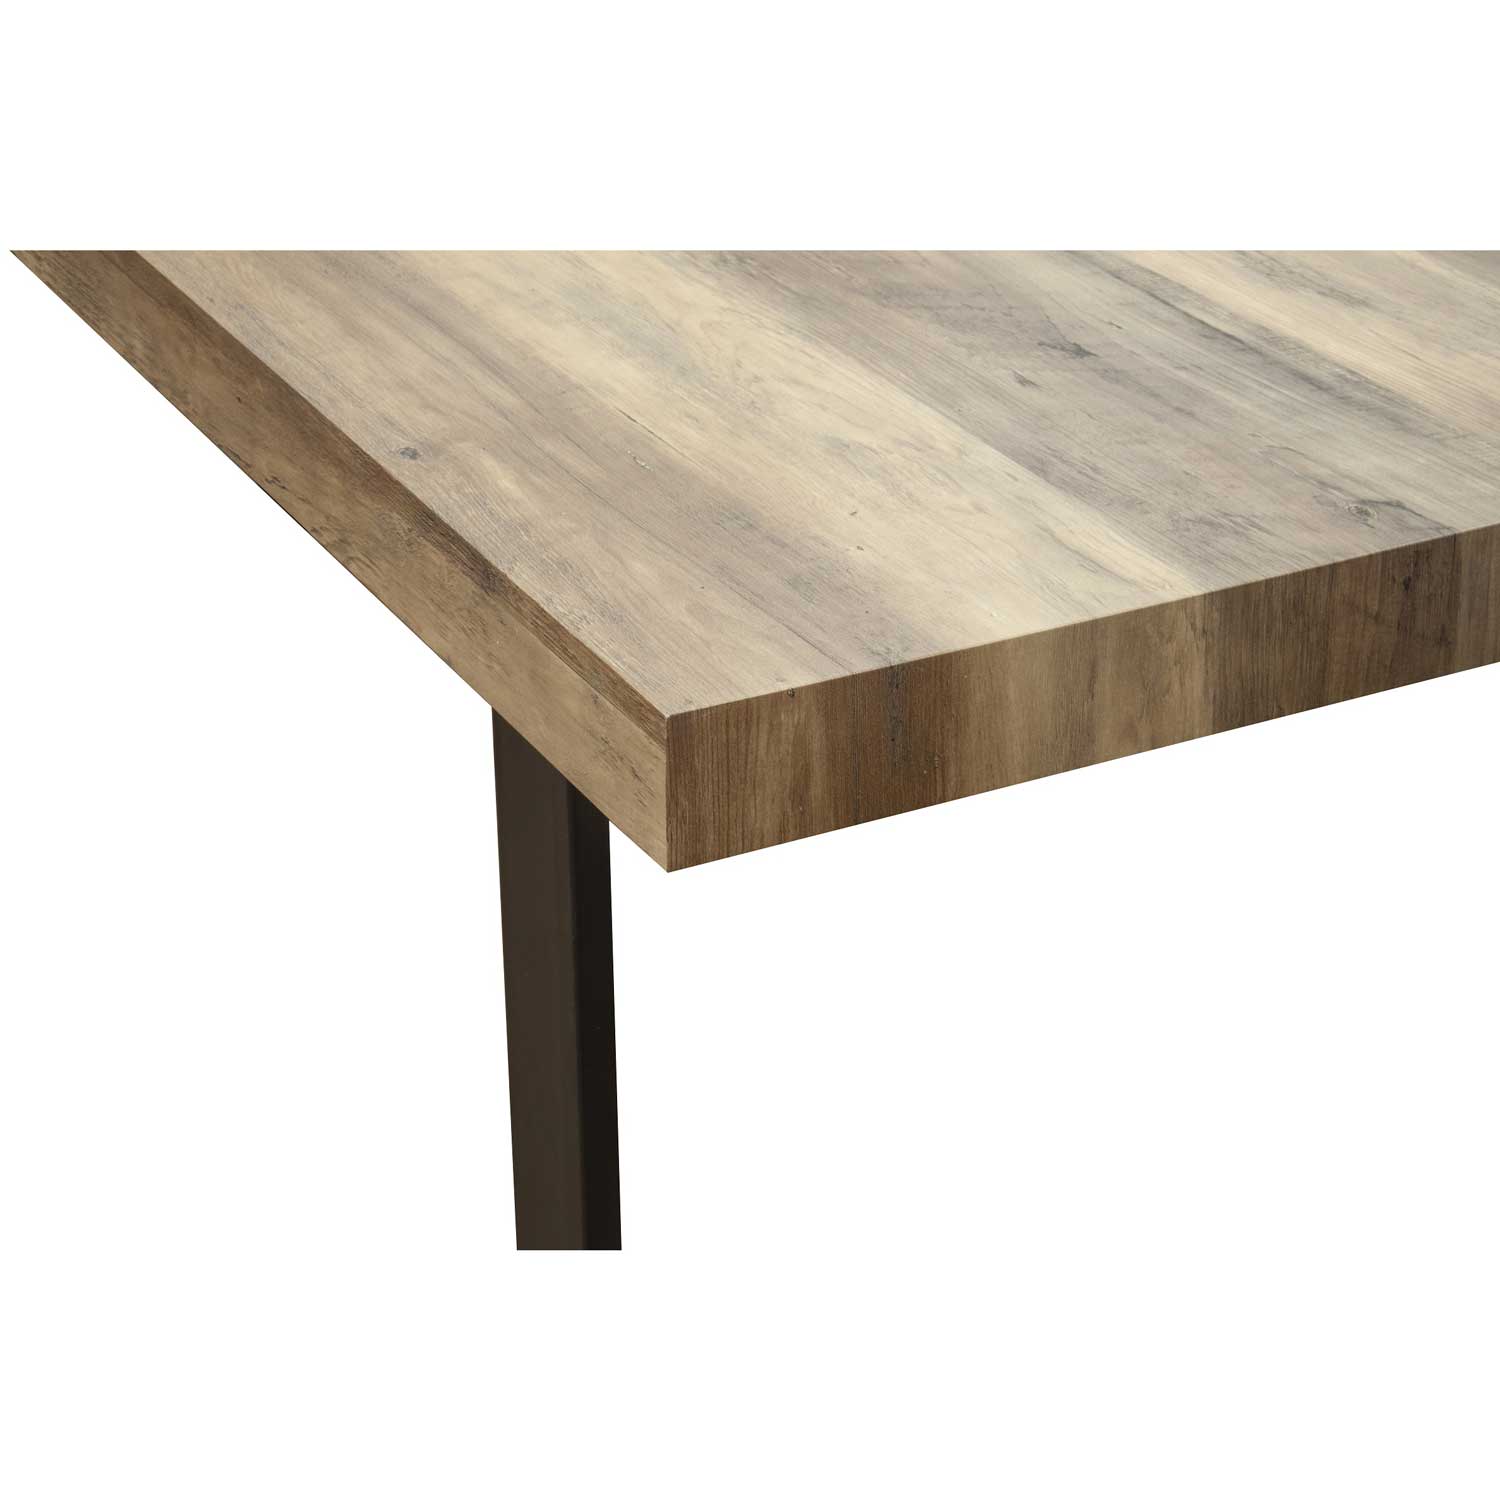 Esszimmertisch Esstisch Kufentisch Holztisch Tisch mit Massive Tischplatte und Kufen - Akazie + Schwarze Kufen